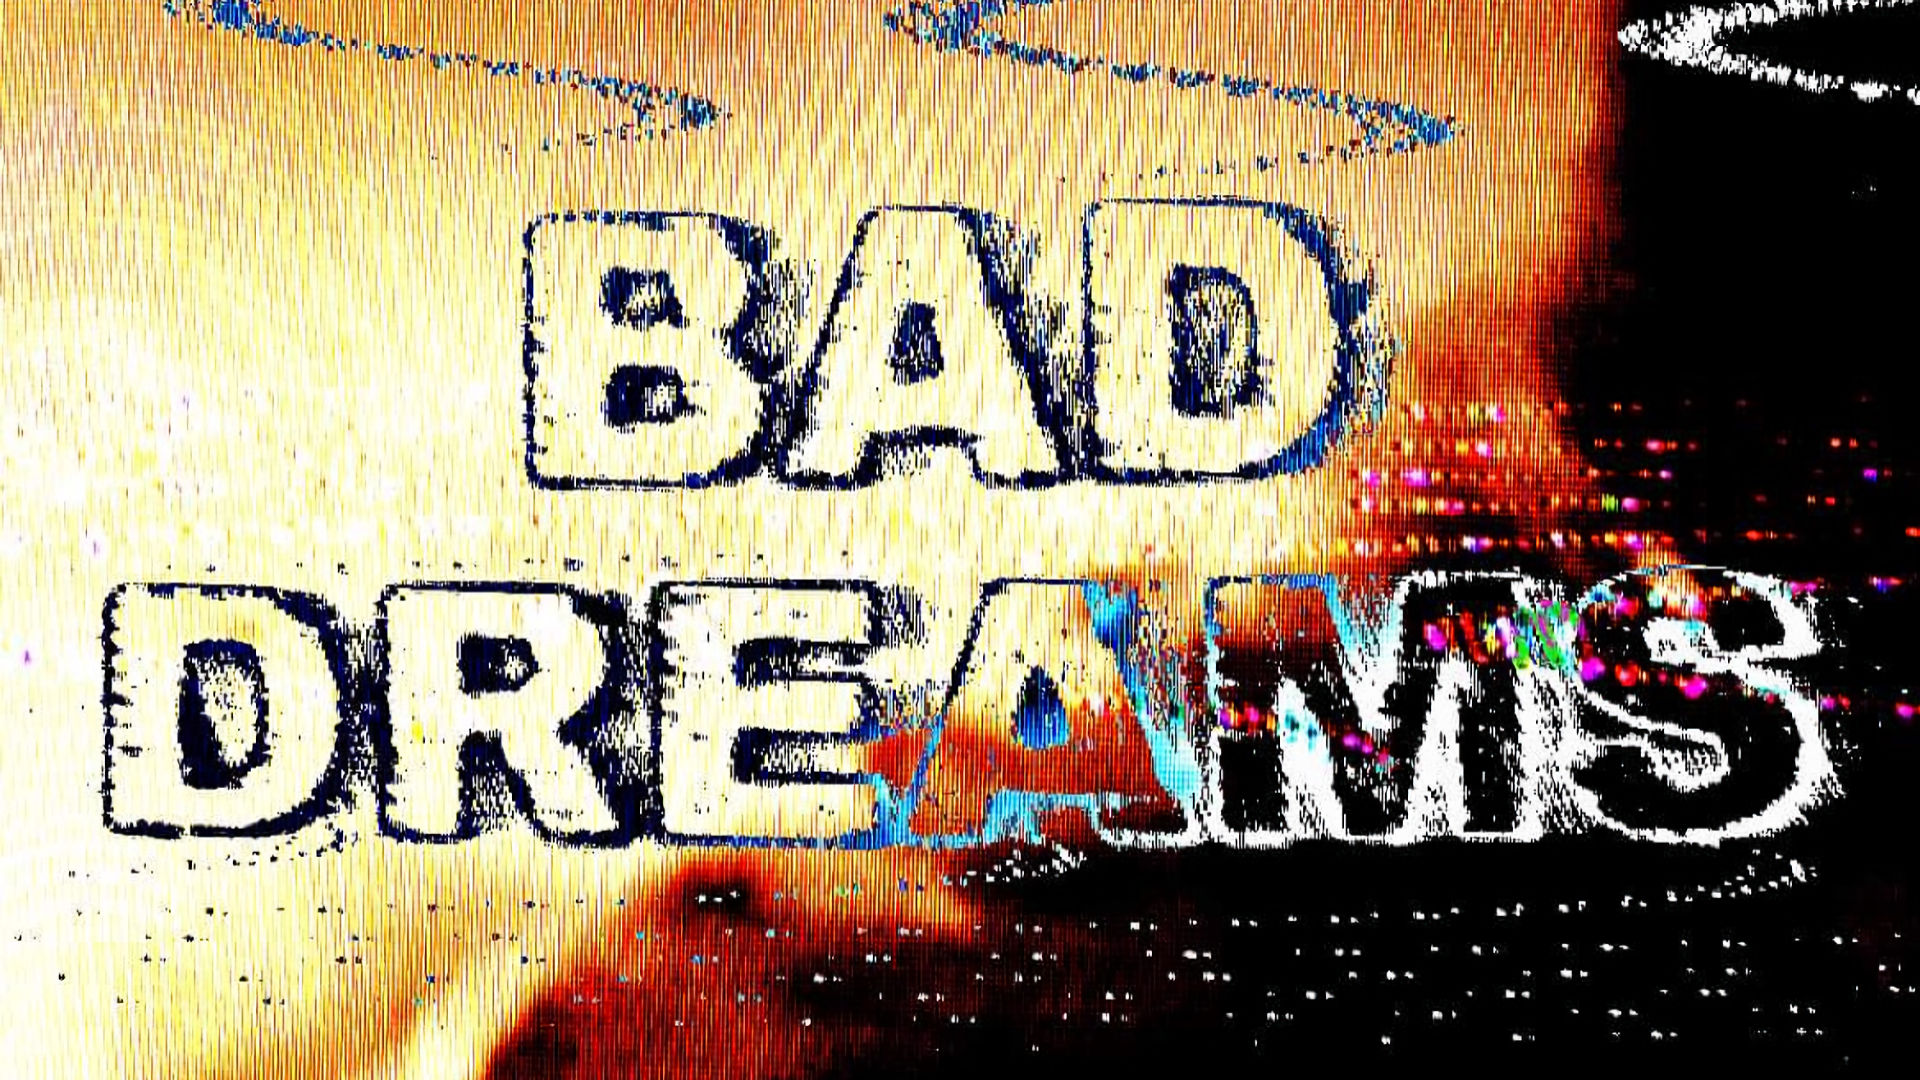 Bad Dreams Festival